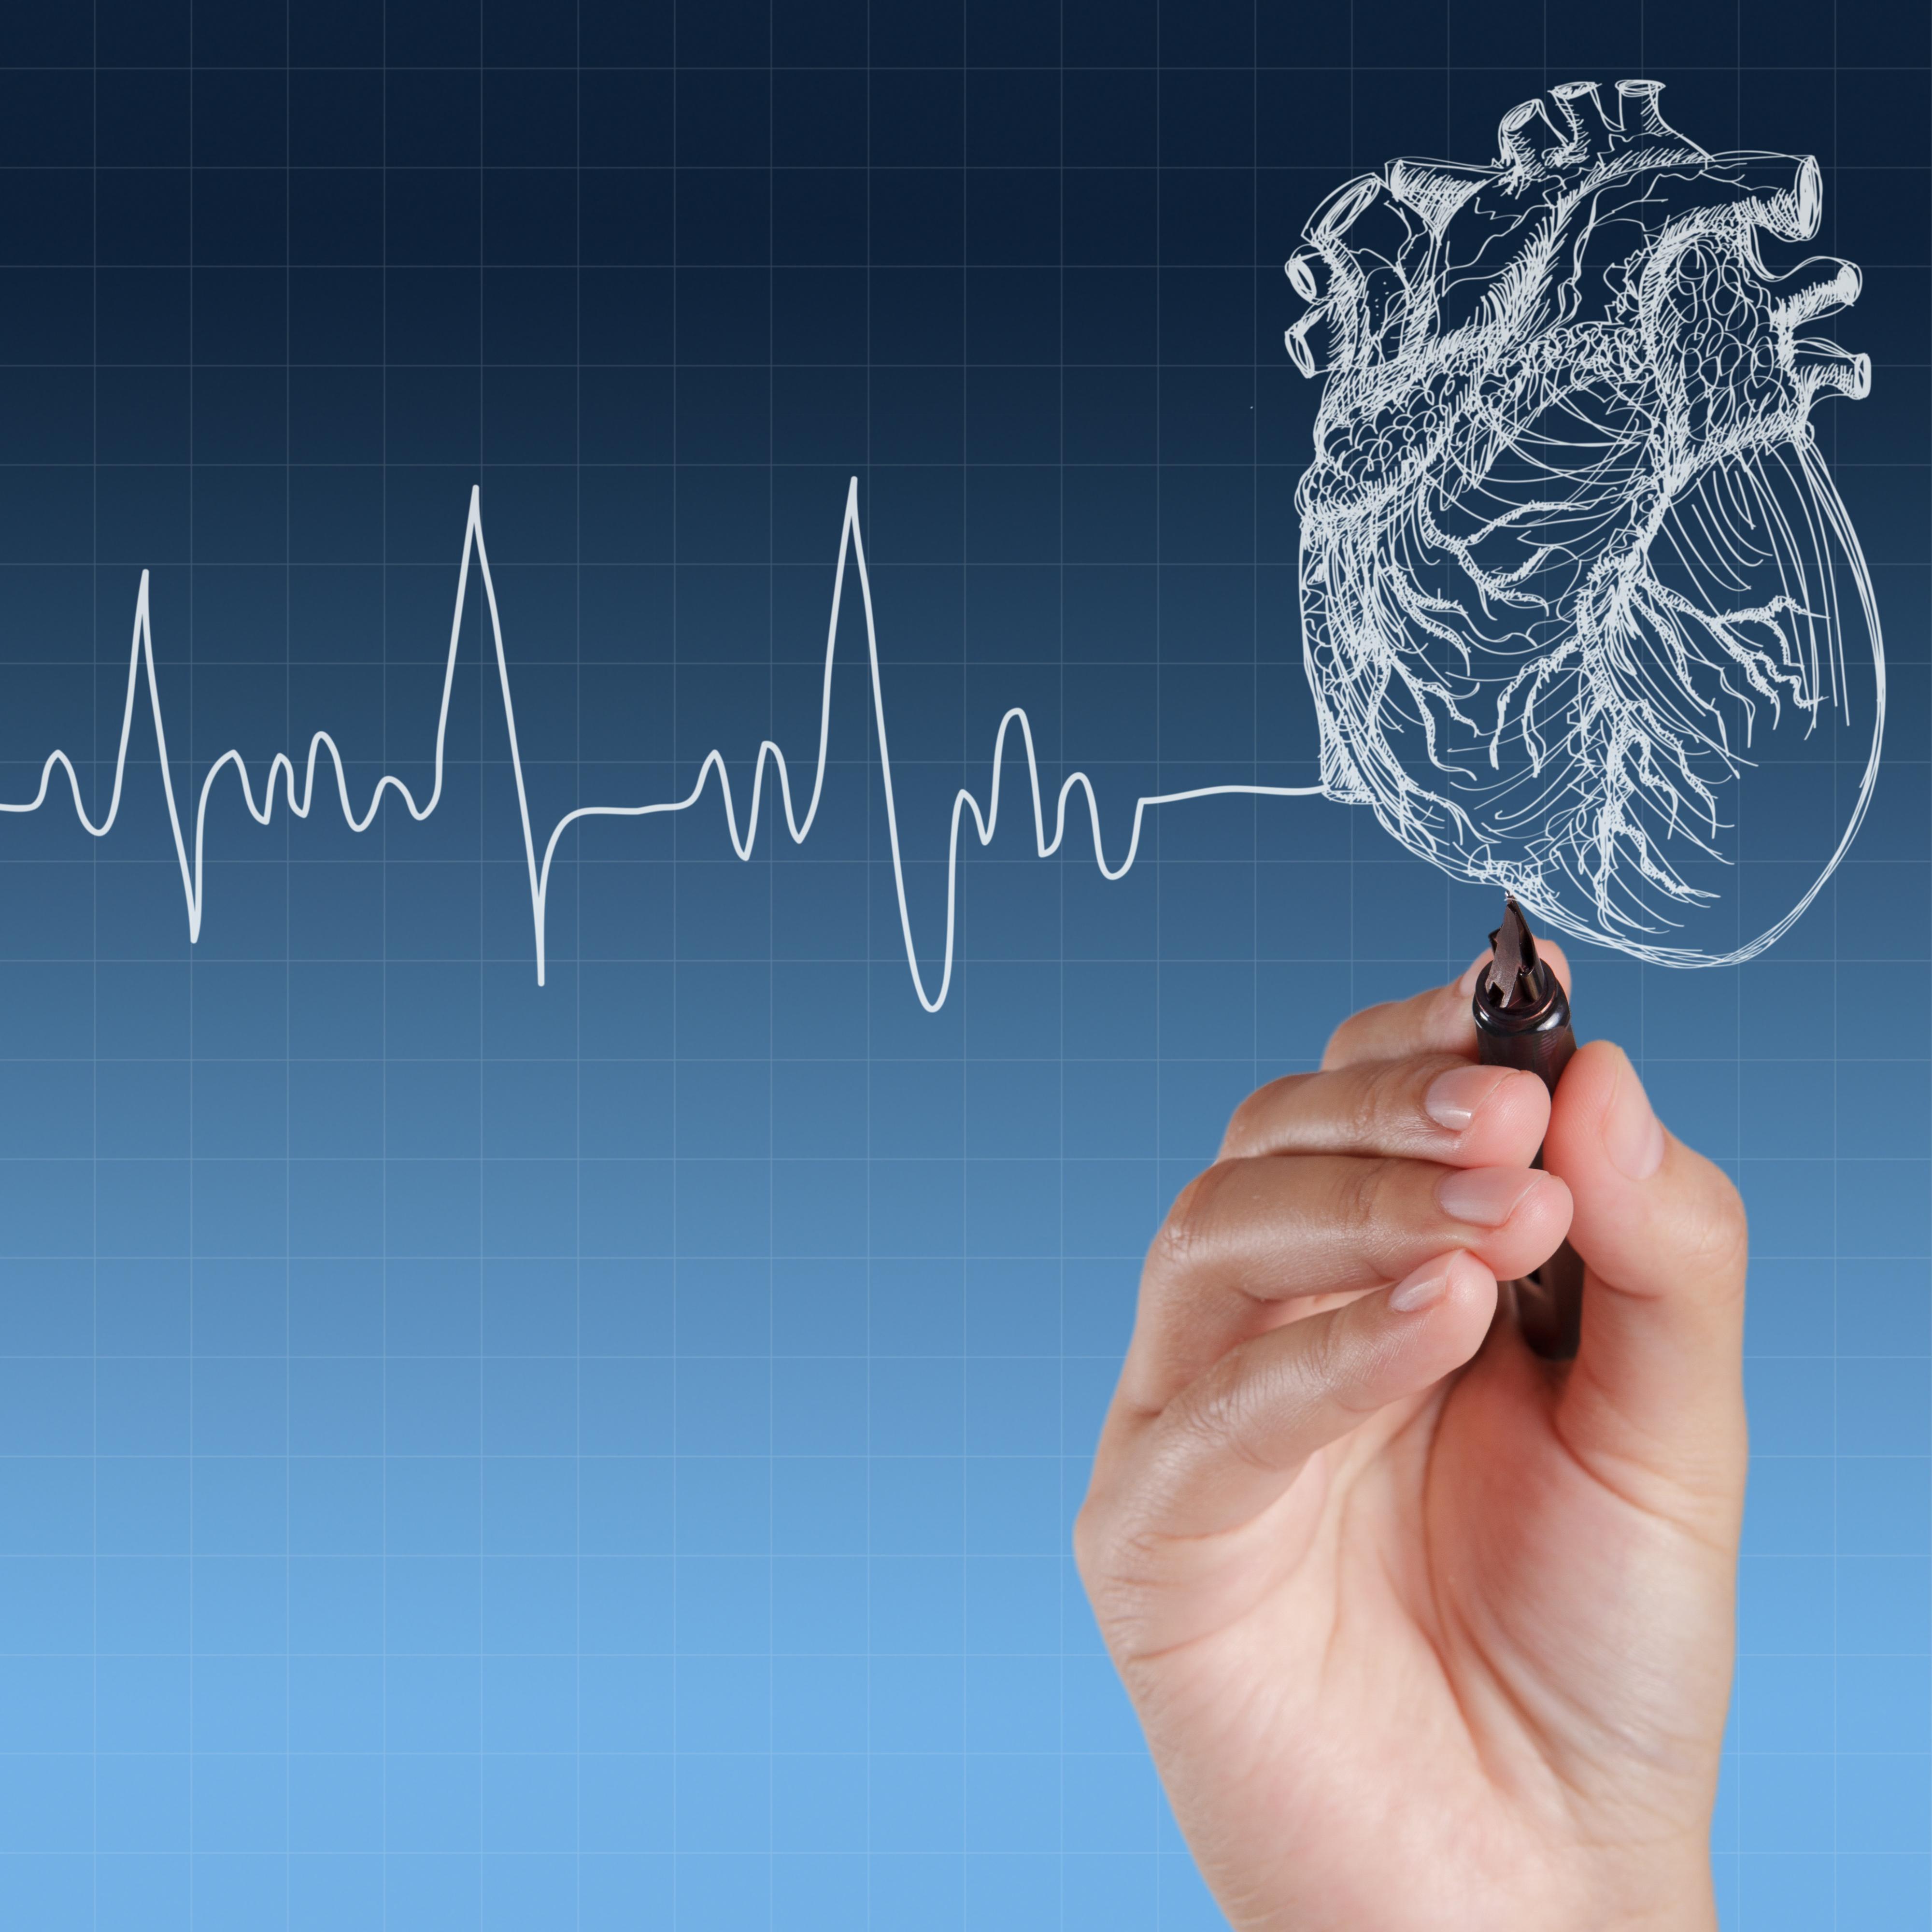 سرعة ضربات القلب أسبابها وعلاجها وطرق الوقاية منها